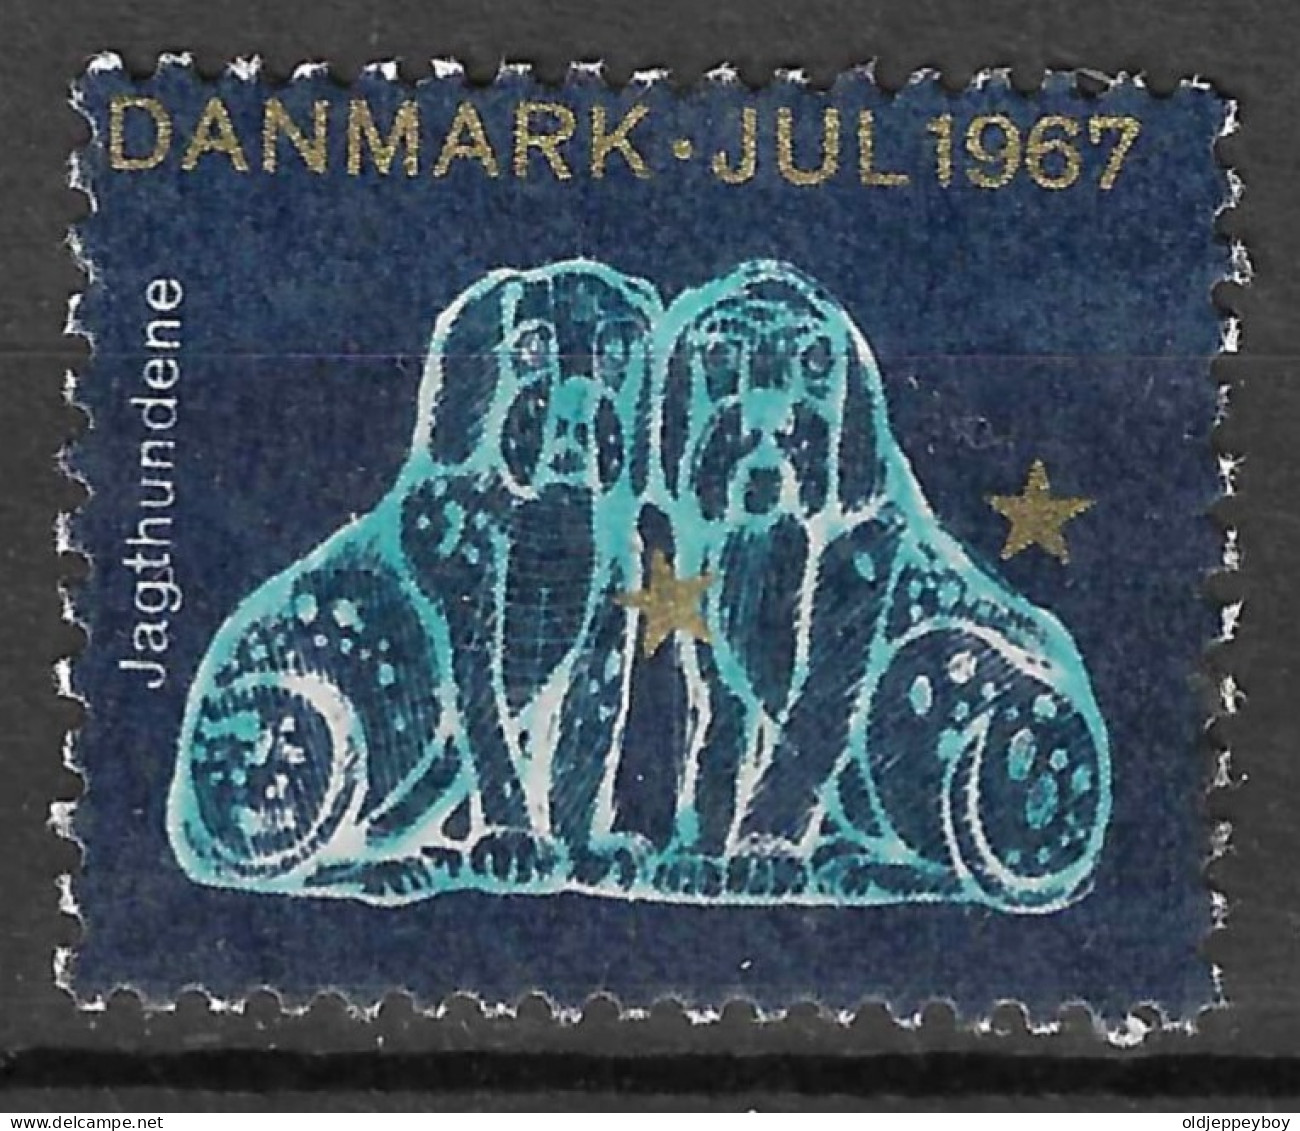 1967 Denmark Danmark JAGTHUNDENE Constellation STAR Astronomy Christmas JUL Charity  Reklamemarke  - Erinnofilia